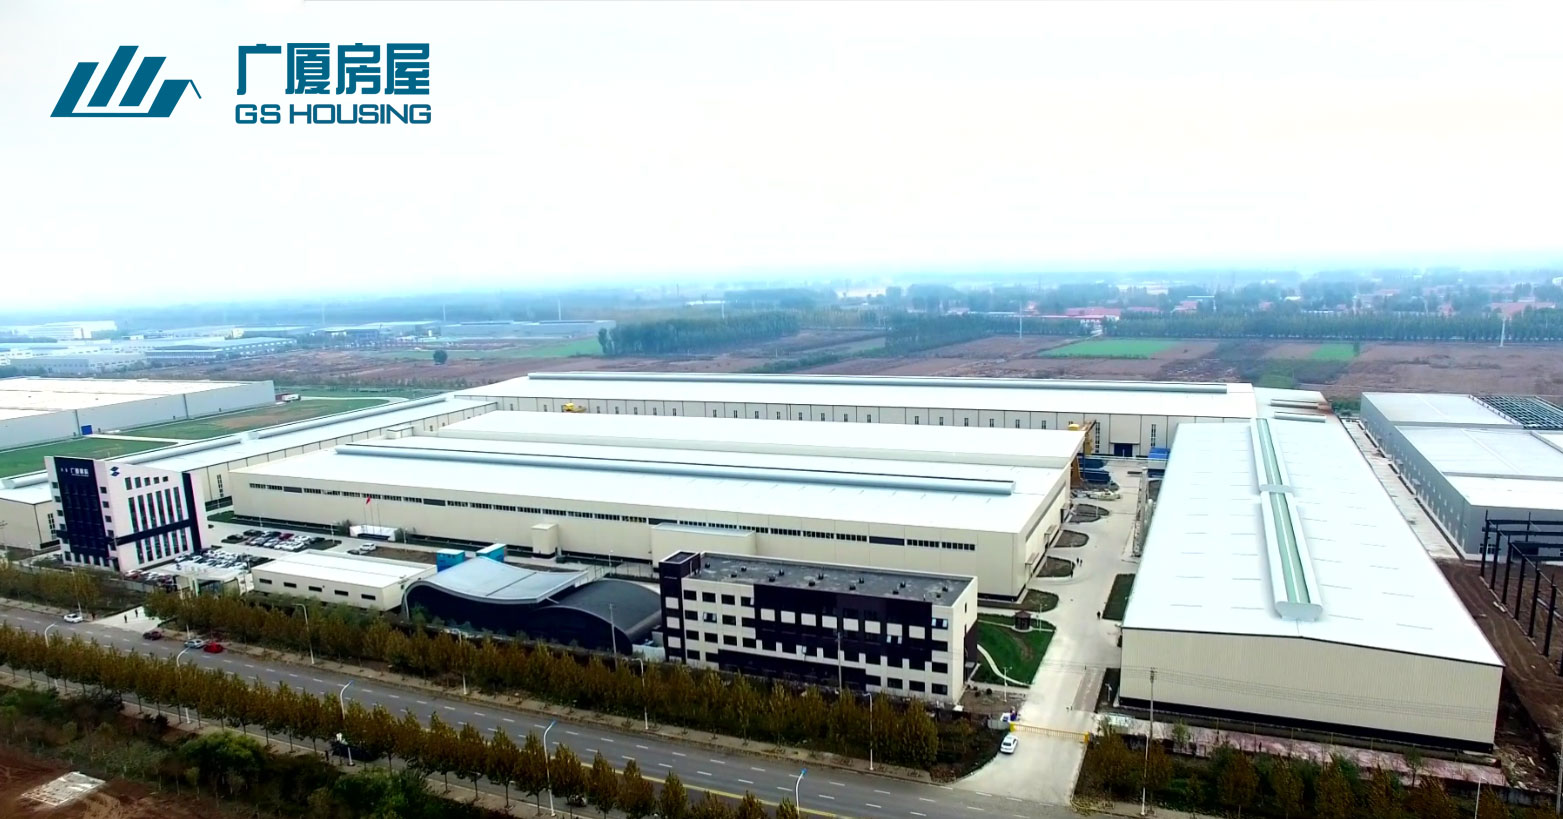 GS HOUSING – Tianjin production base sa hilaga ng China (Nangungunang 3 pinakamalaking modular house factory ng China)